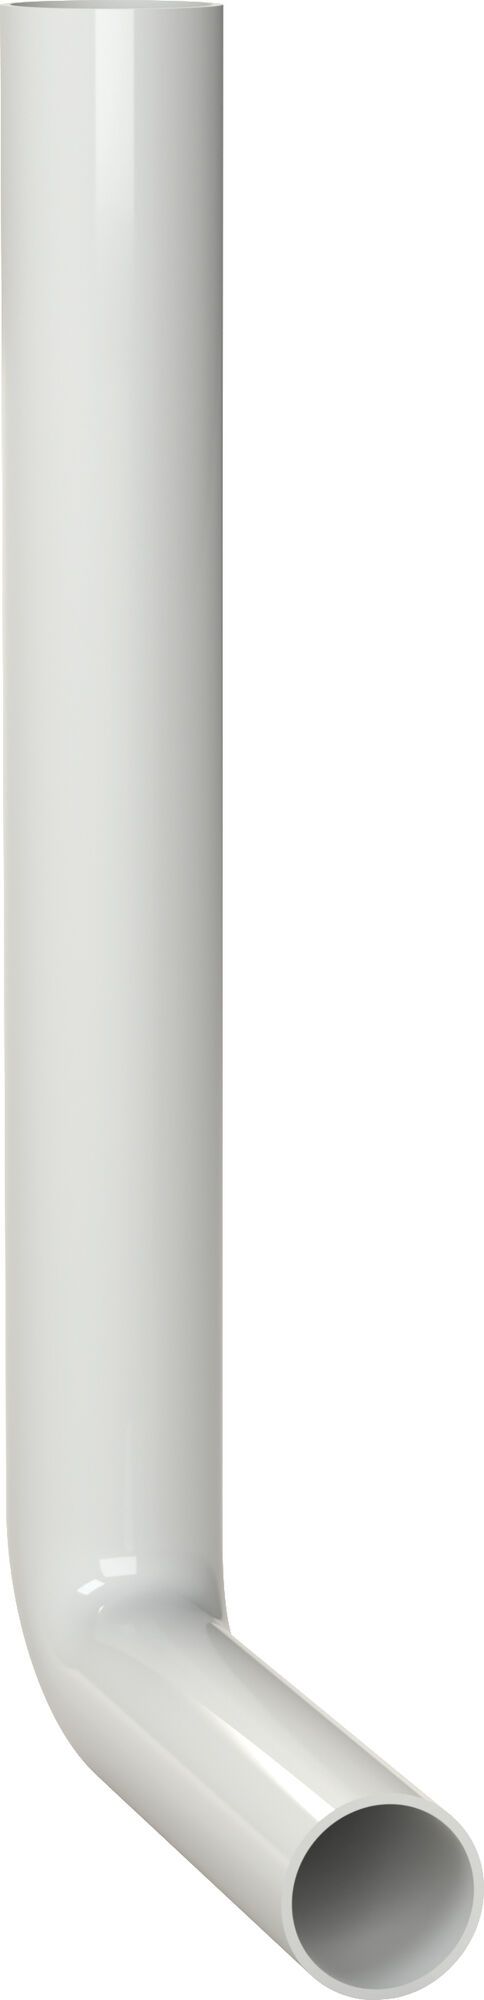 KOLANO SPUSTOWE 380 x 210 mm, biały